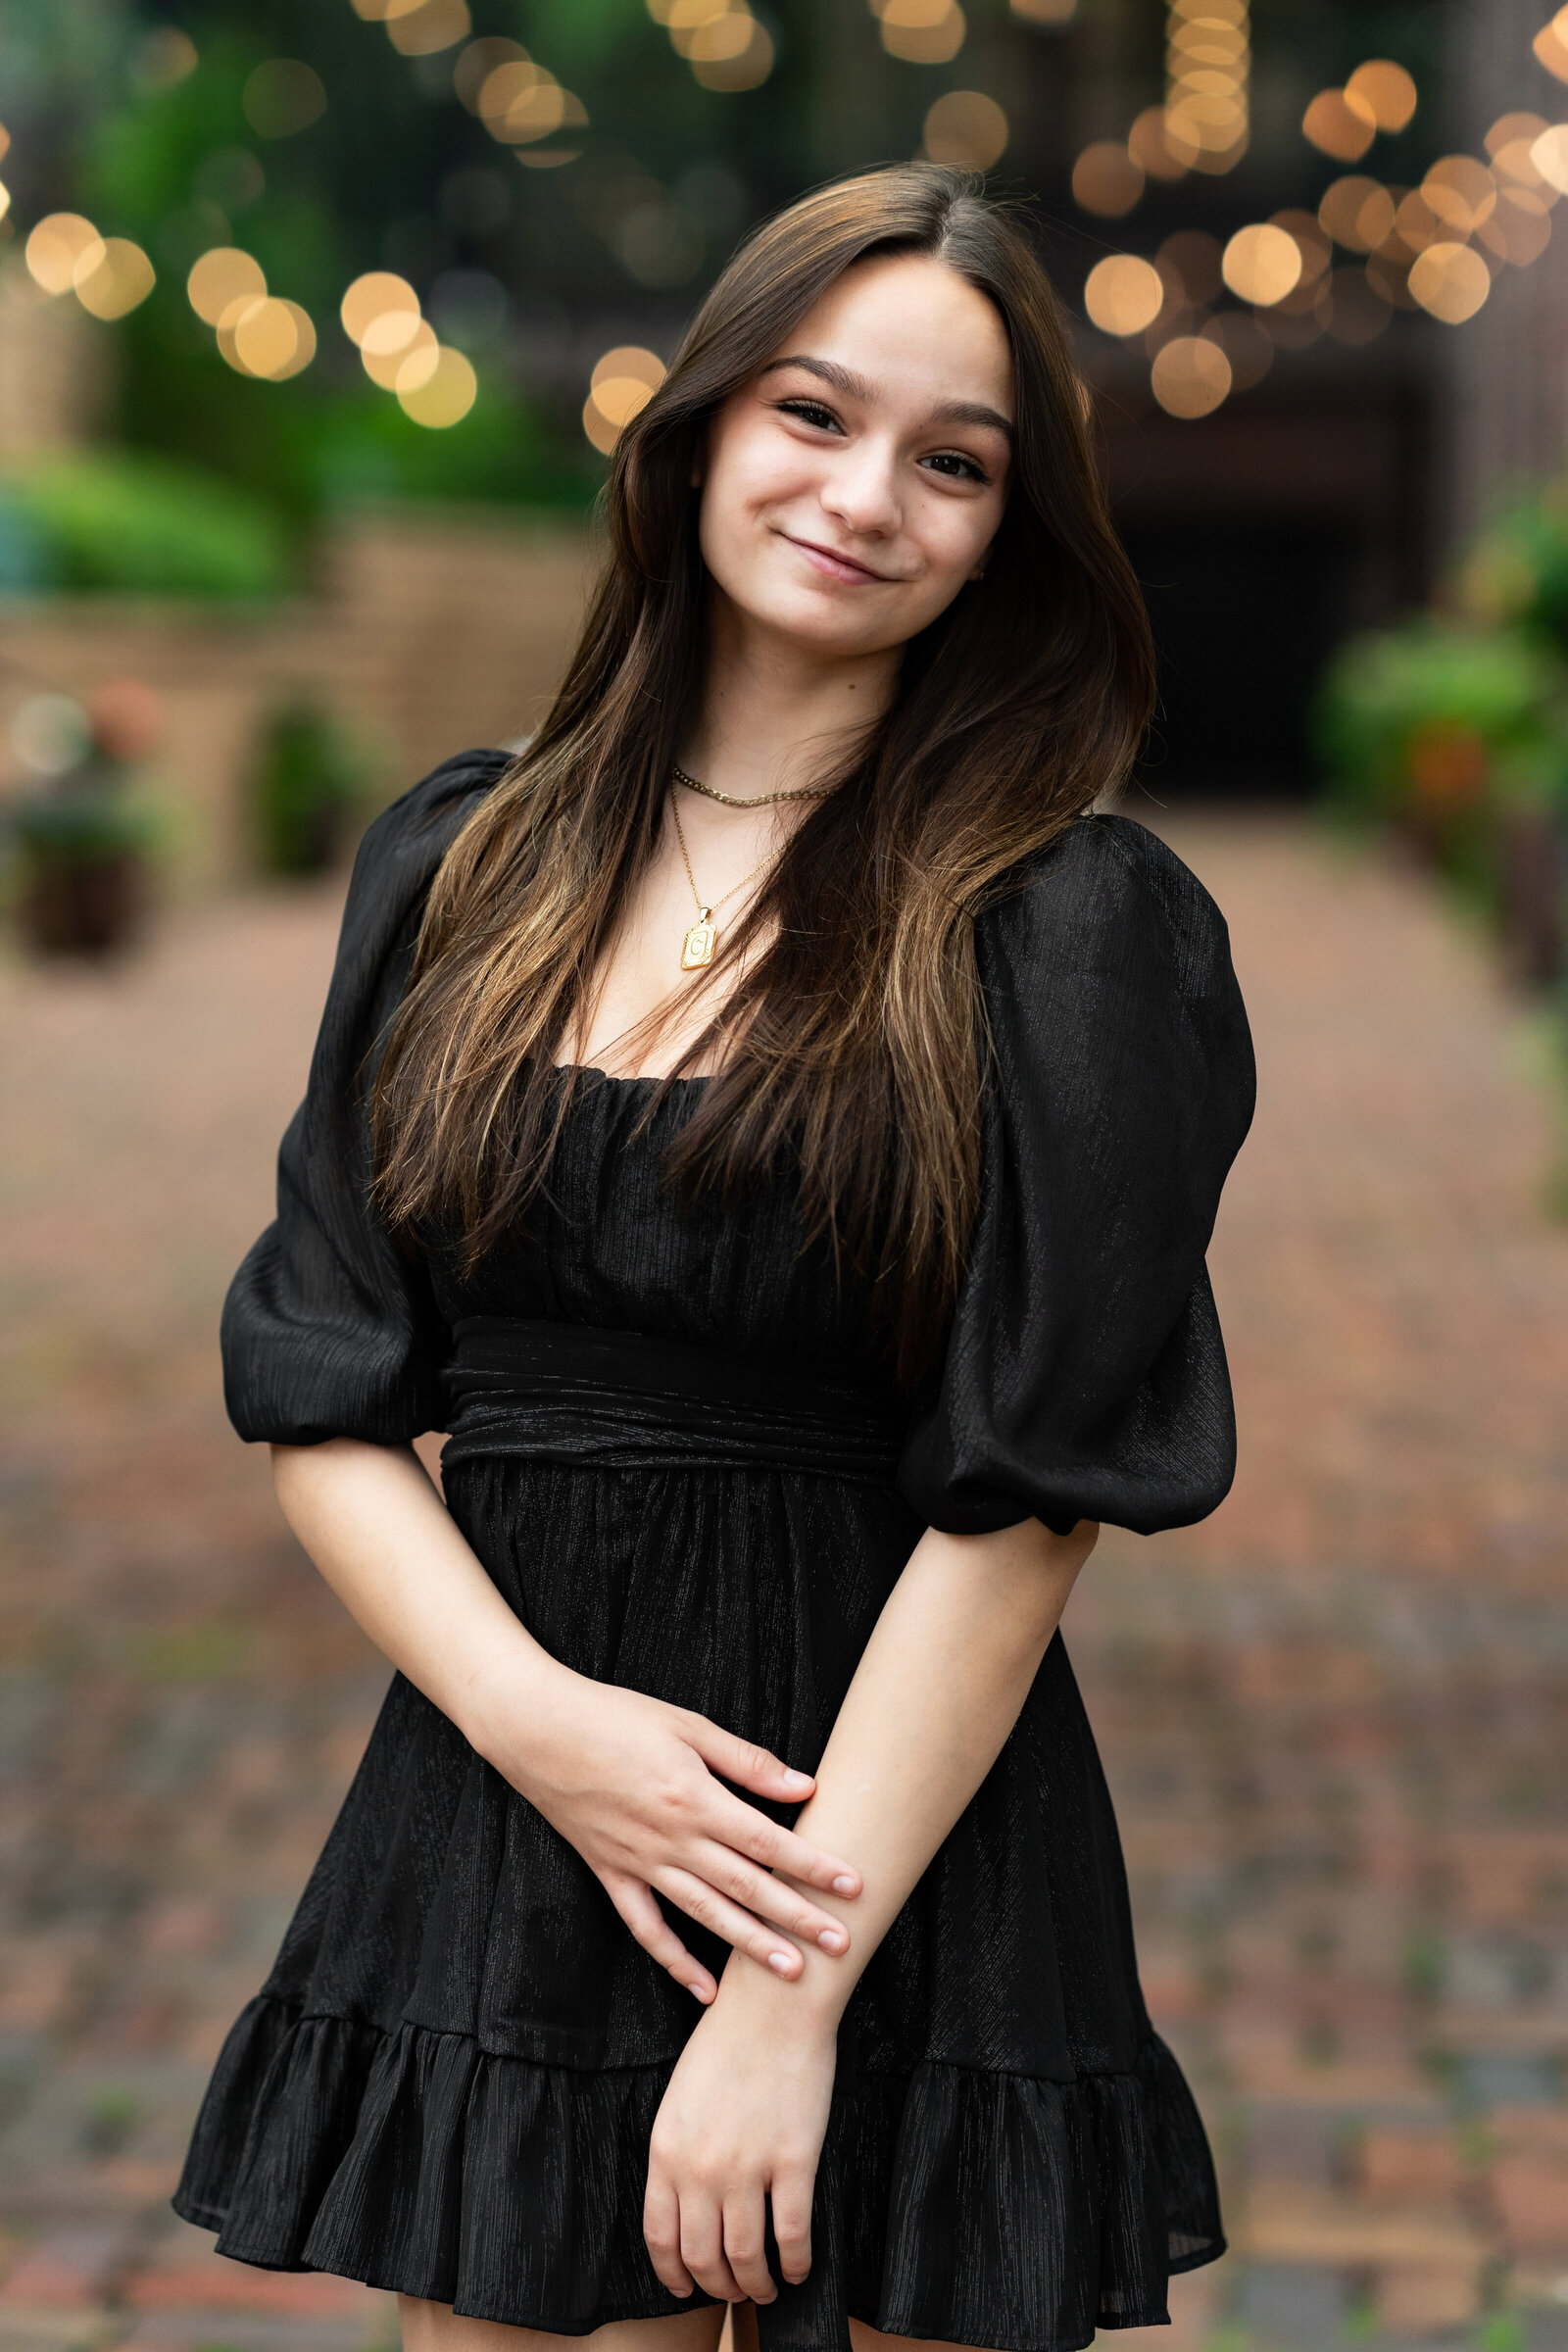 Senior girl in black dress smiles while standing on cobblestone.